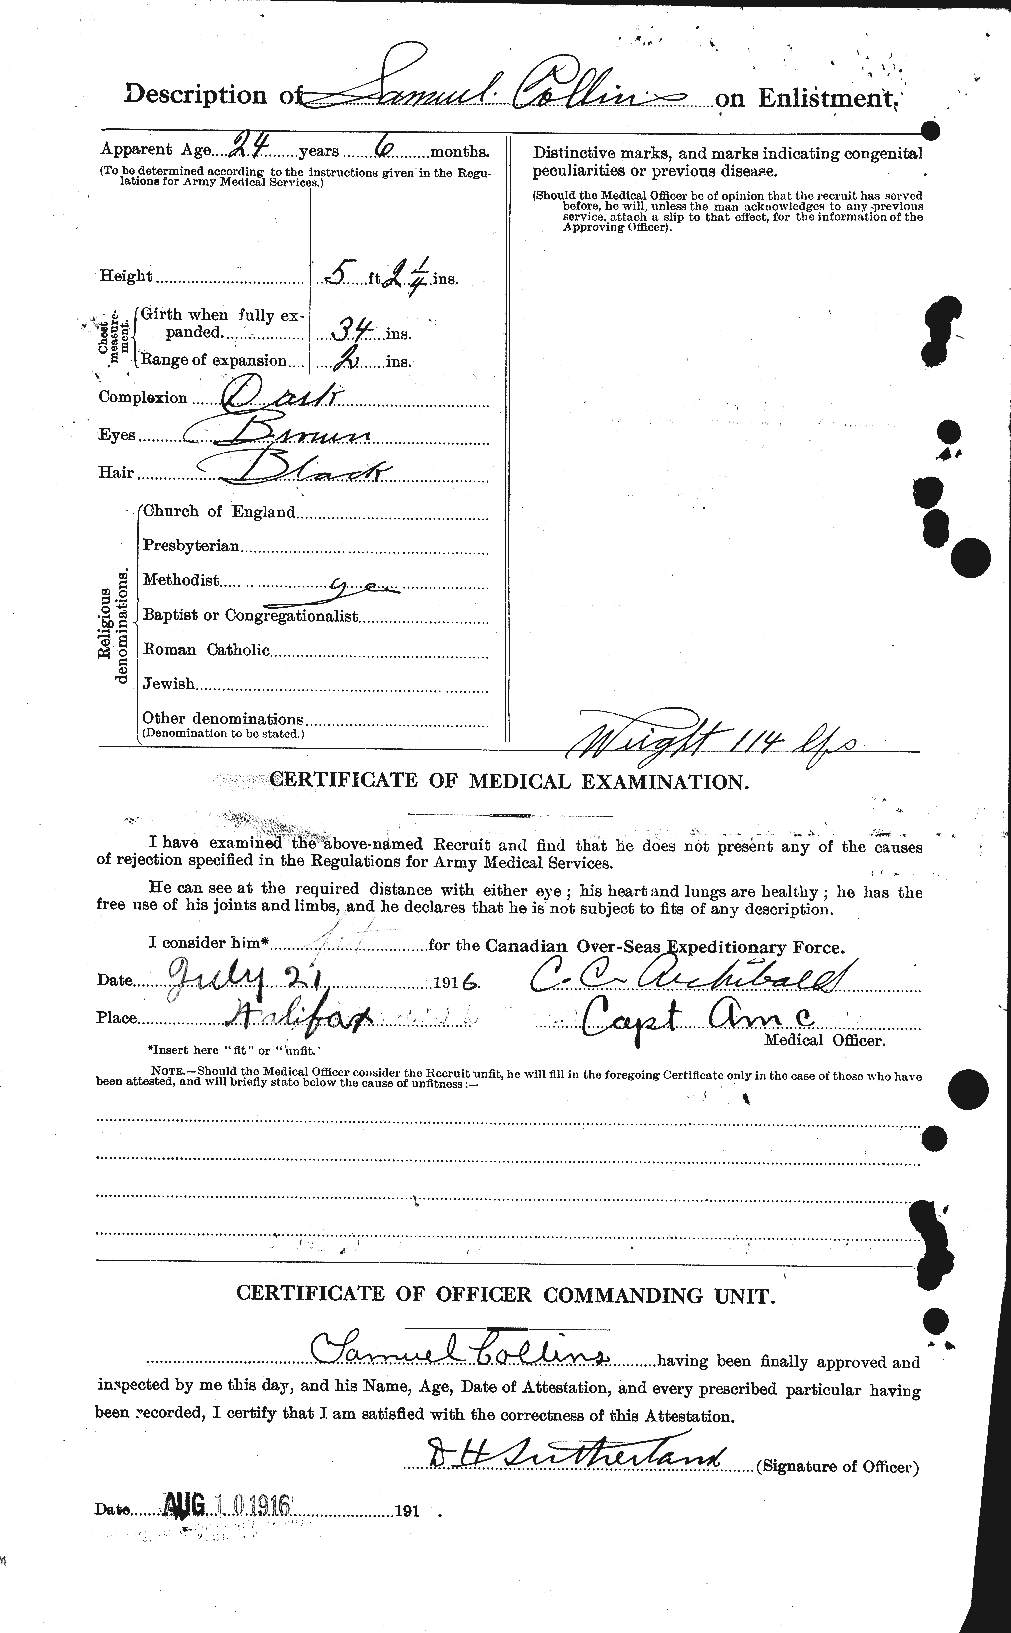 Dossiers du Personnel de la Première Guerre mondiale - CEC 069161b